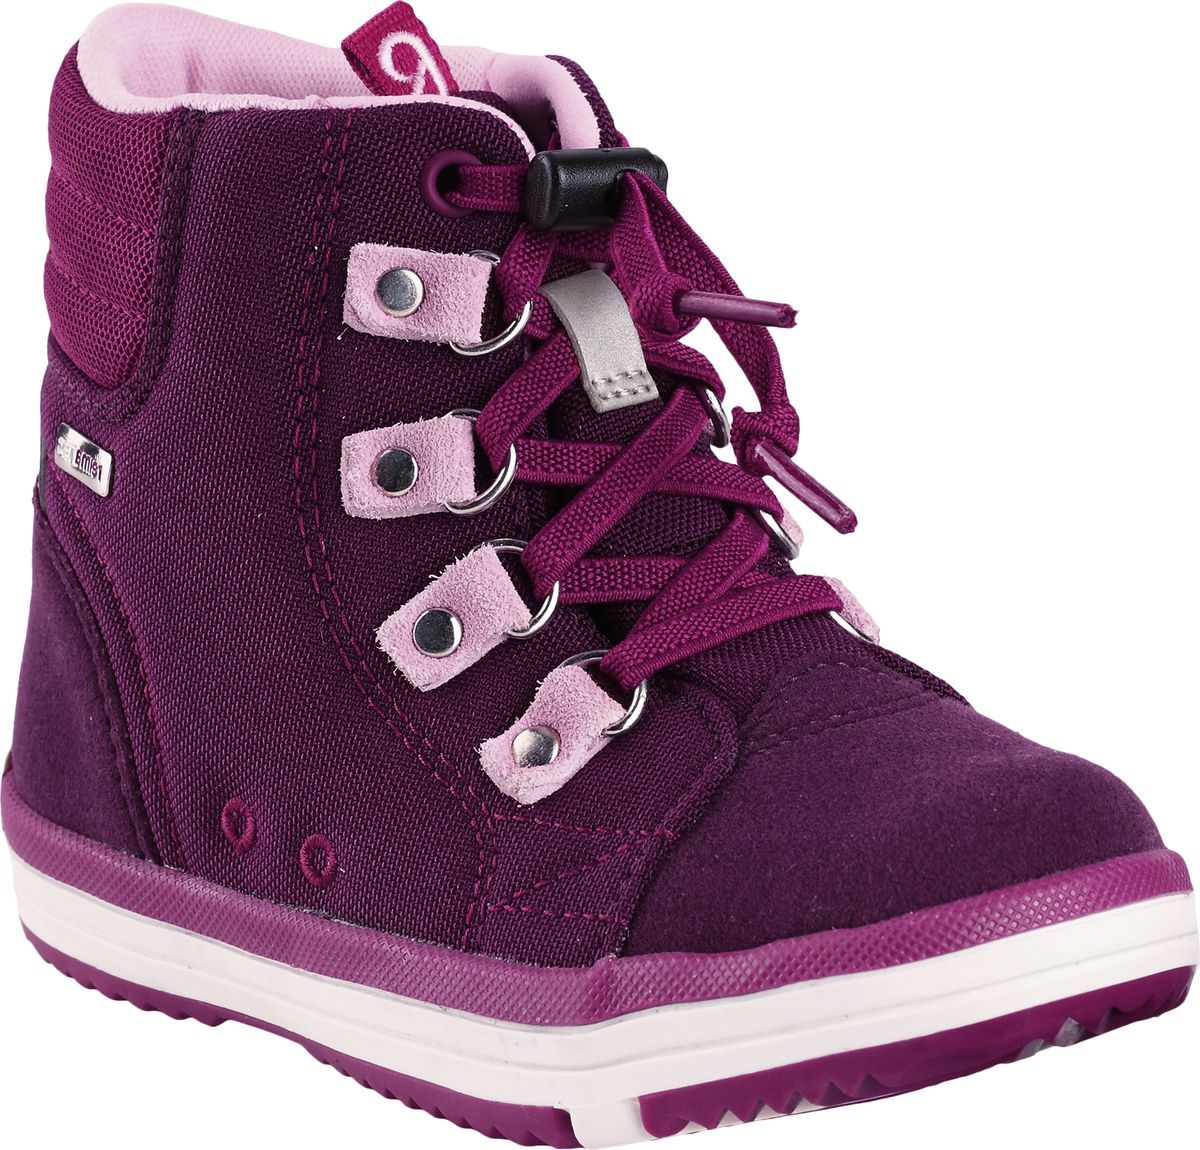 Ботинки детские Reima Wetter, цвет: фиолетовый. 5693434960. Размер 33